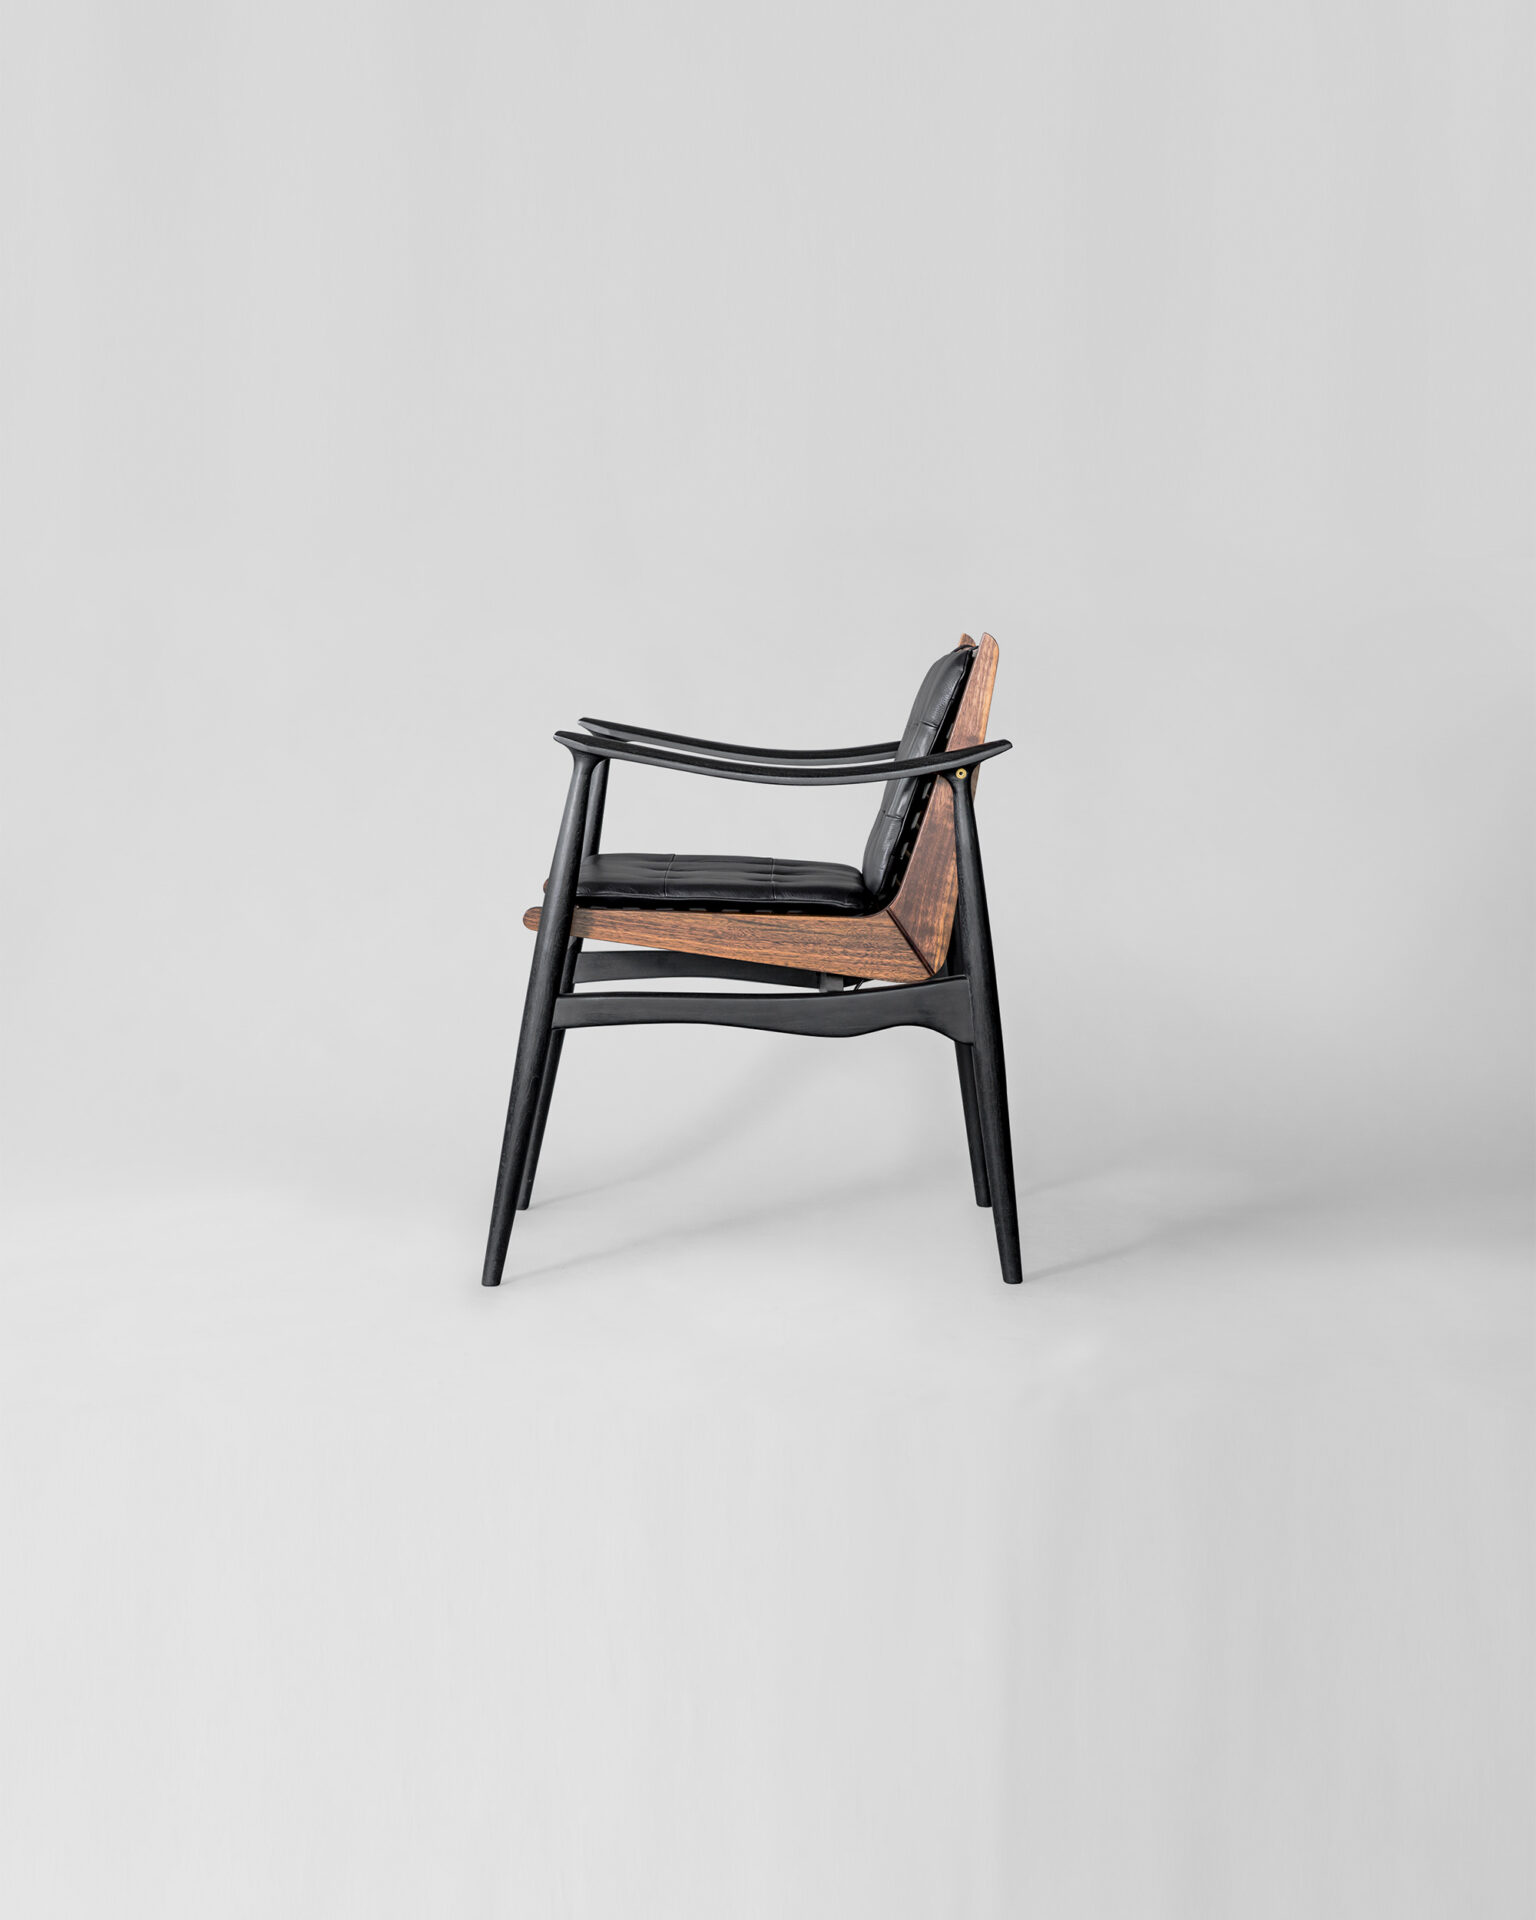 Atra_Atra Dining Chair_Seating_Studio Fenice_ (1)